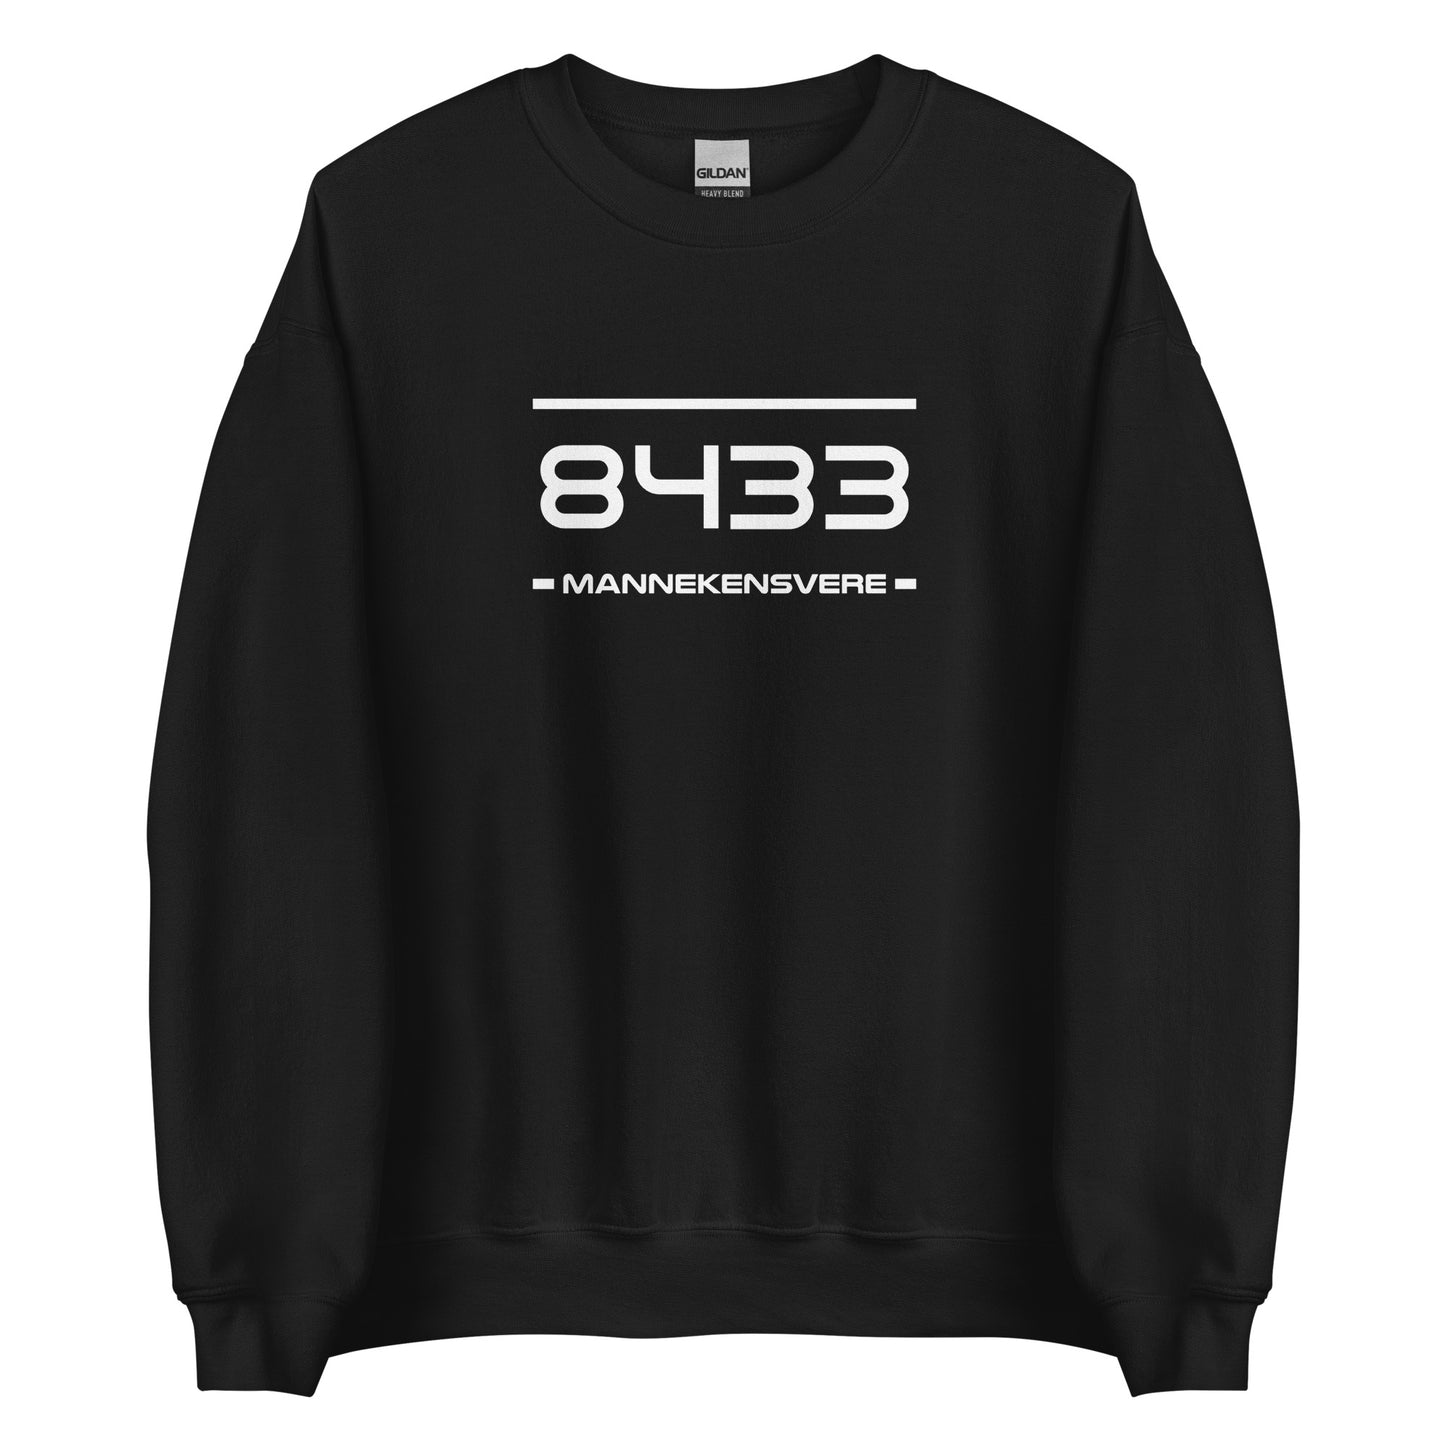 Sweater - 8433 - Mannekensvere (M/V)